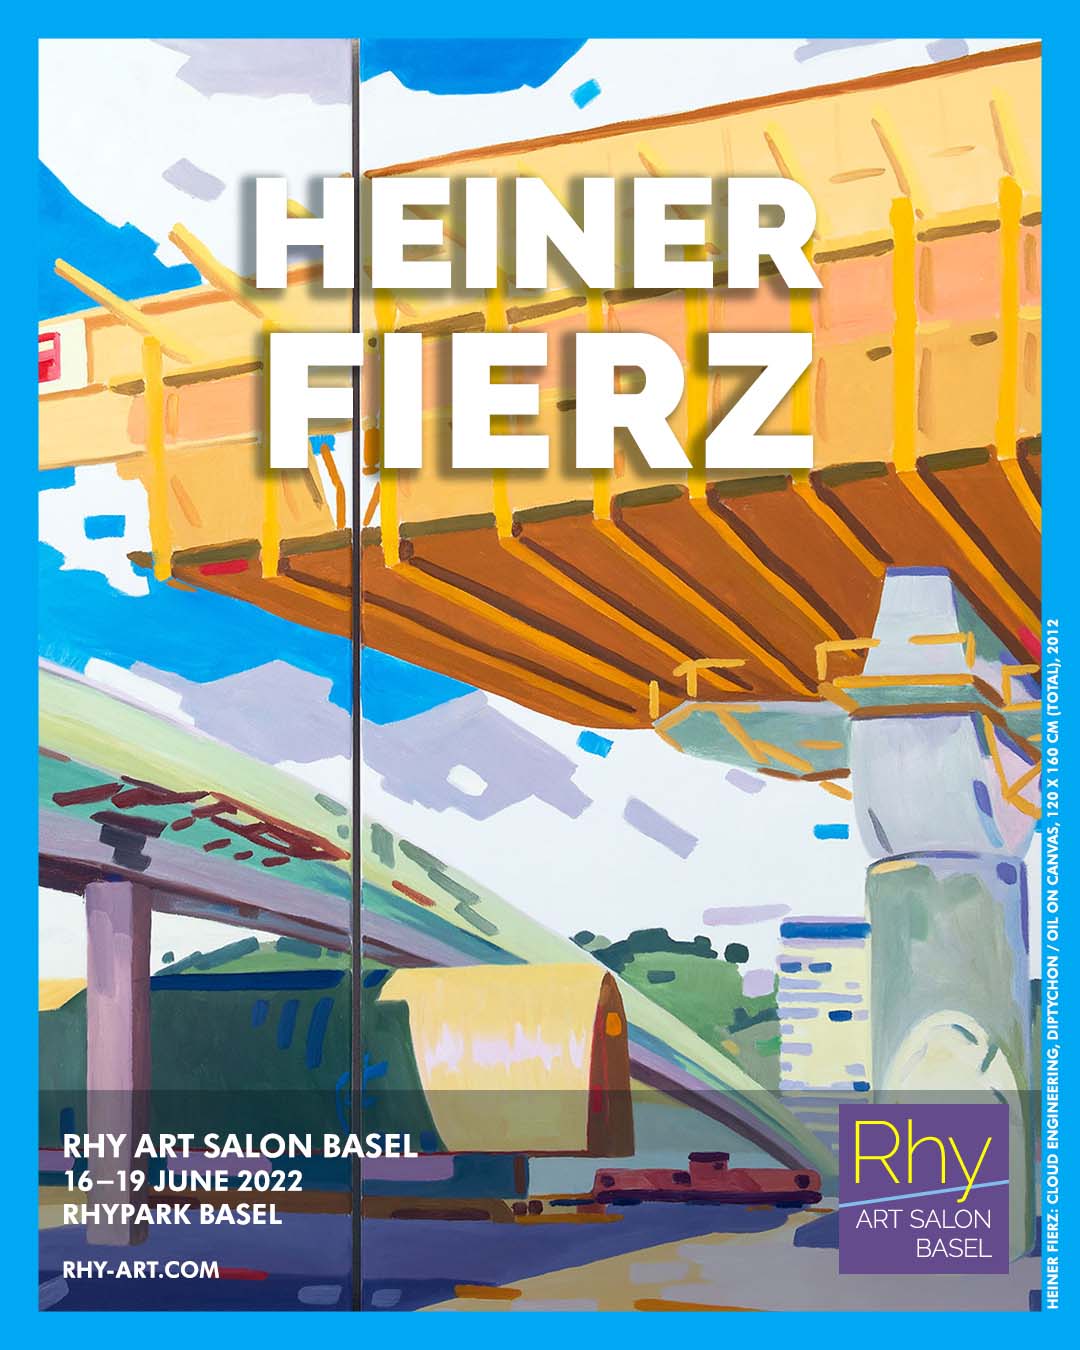 Heiner Fierz at Rhy Art Salon Basel 2022